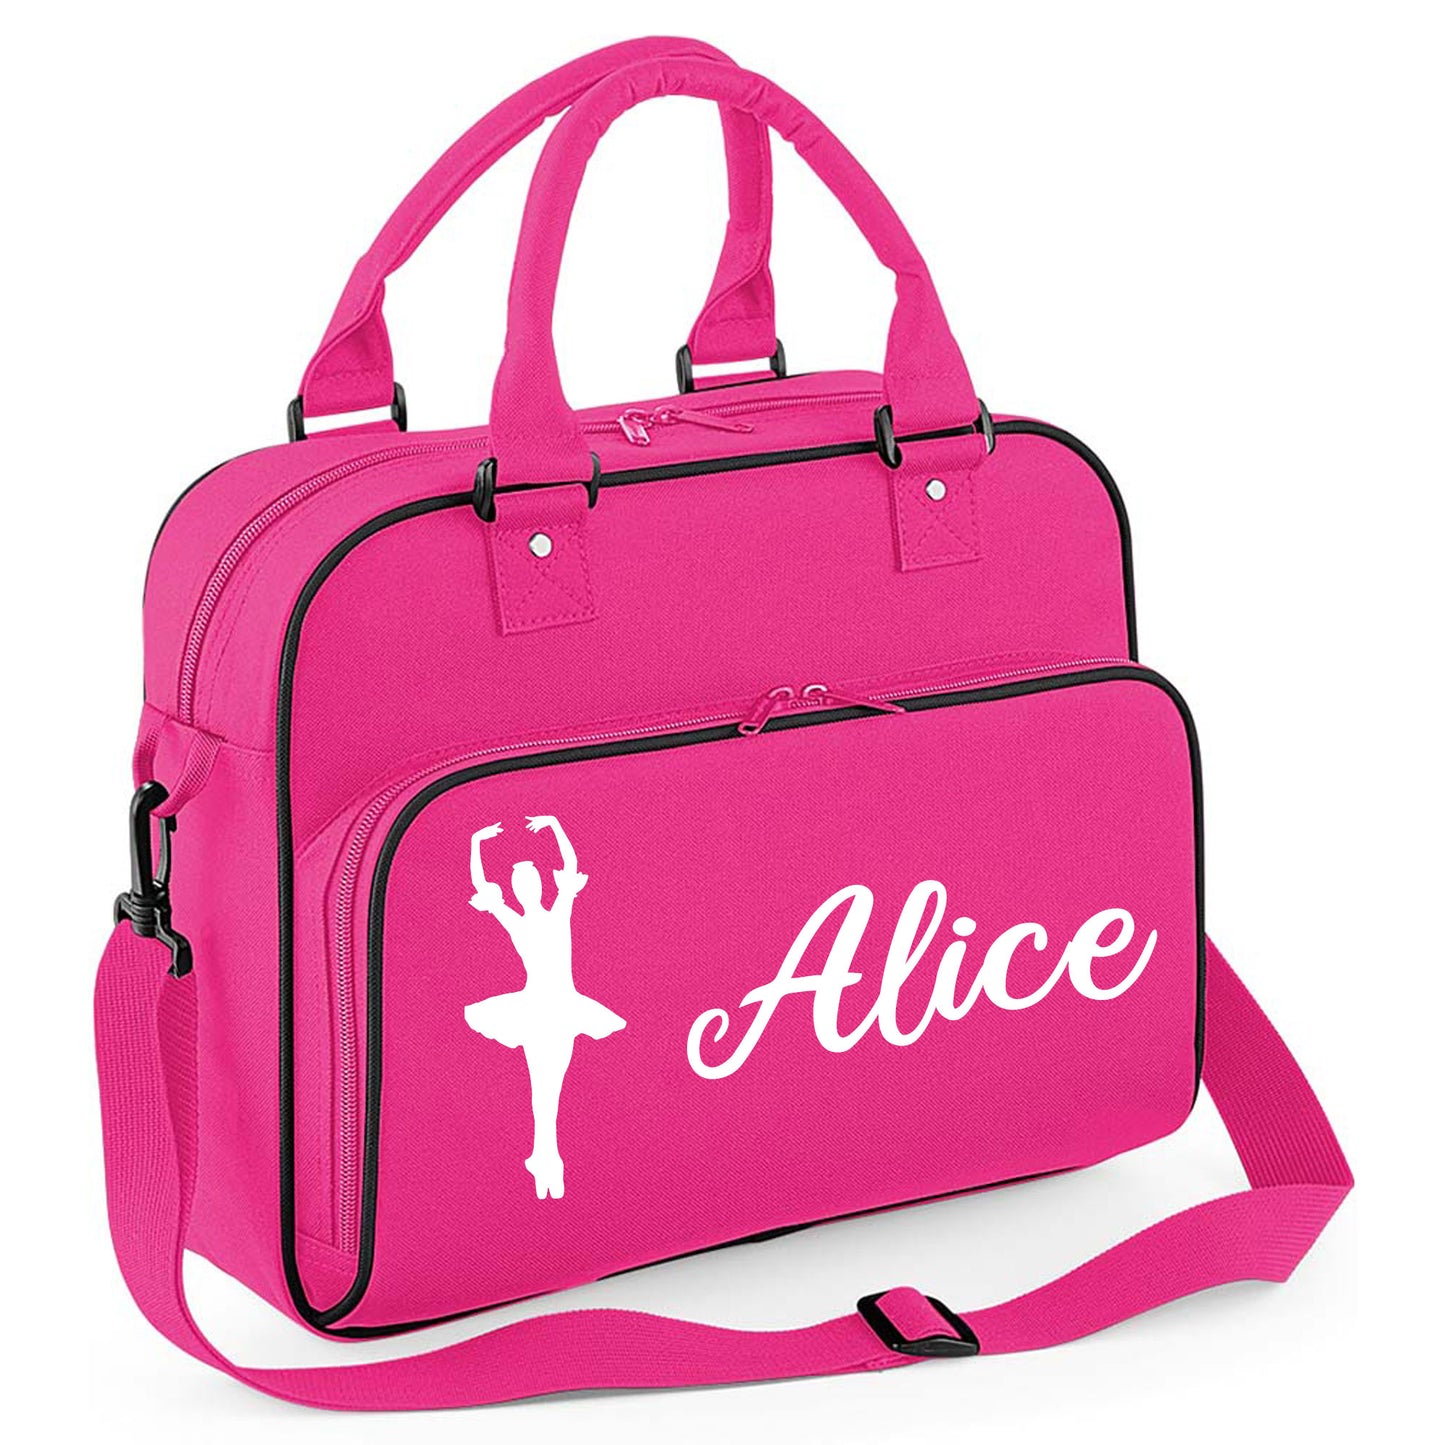 Personalised Dance Bag Kids | Girls Children's Ballet School Bag  - Always Looking Good - Hot Pink Ballet Dancer 